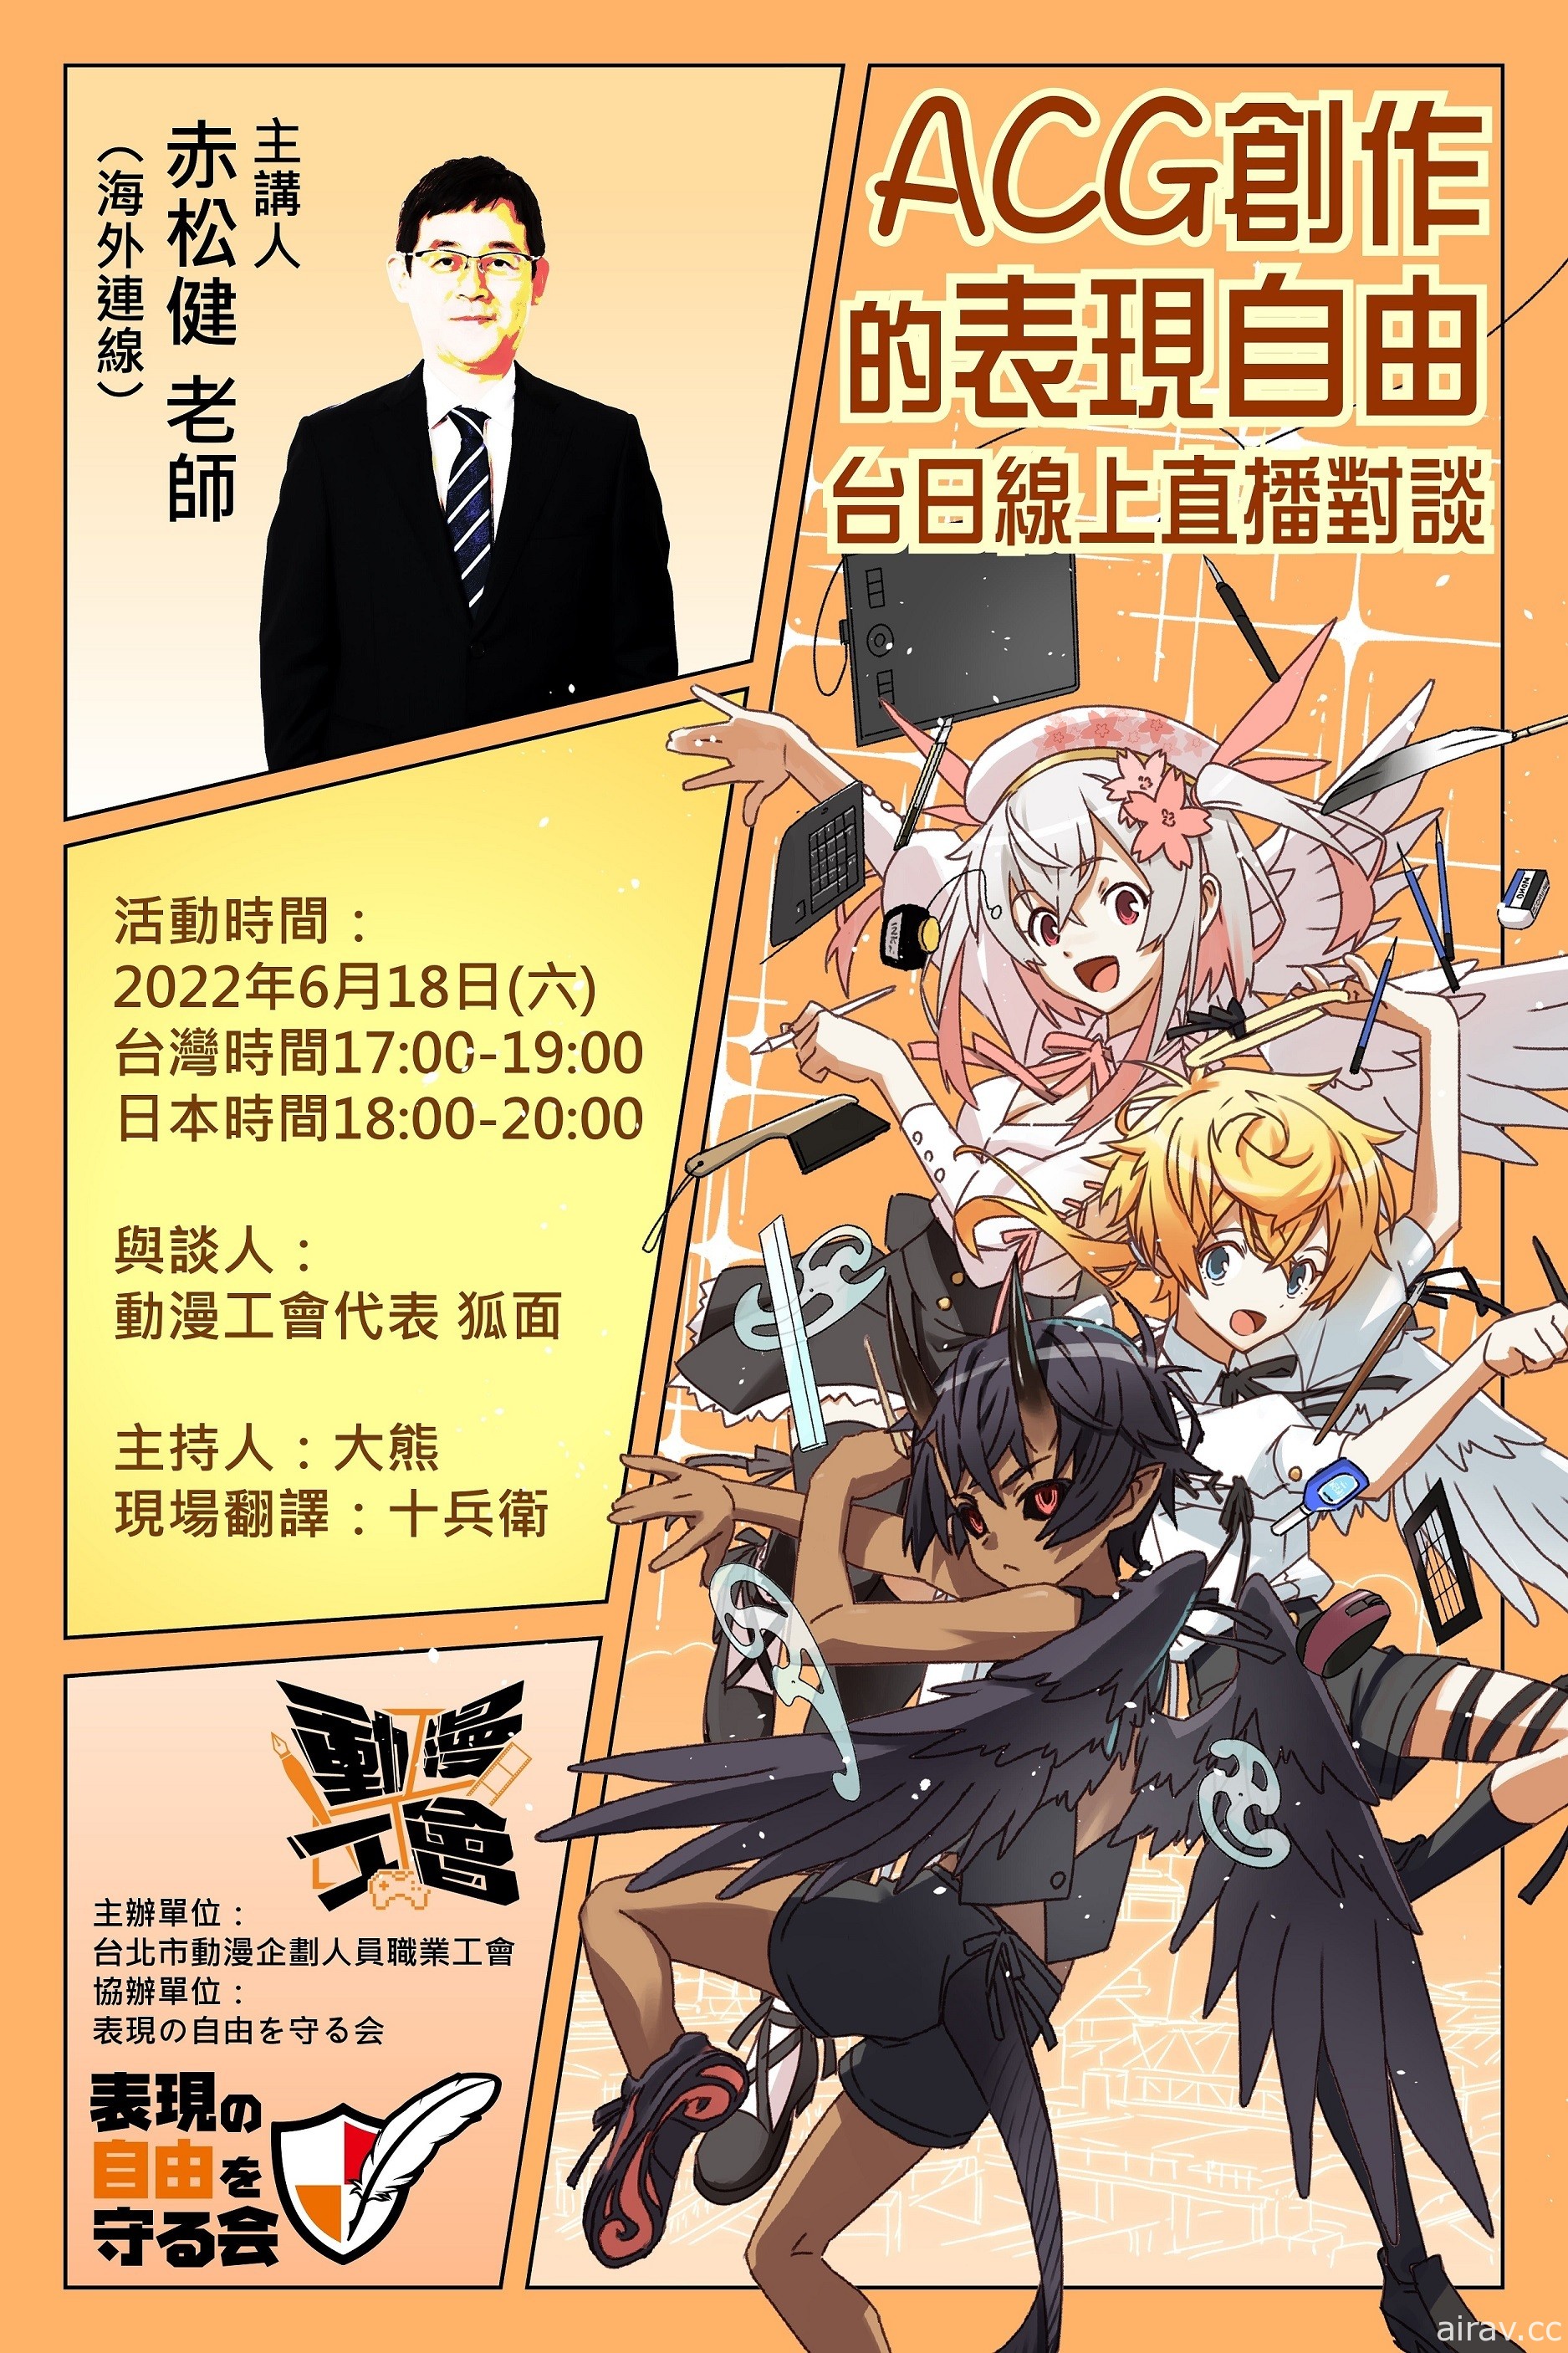 动漫创作的表现自由 漫画家赤松健台日线上直播对谈将于 6/18 登场